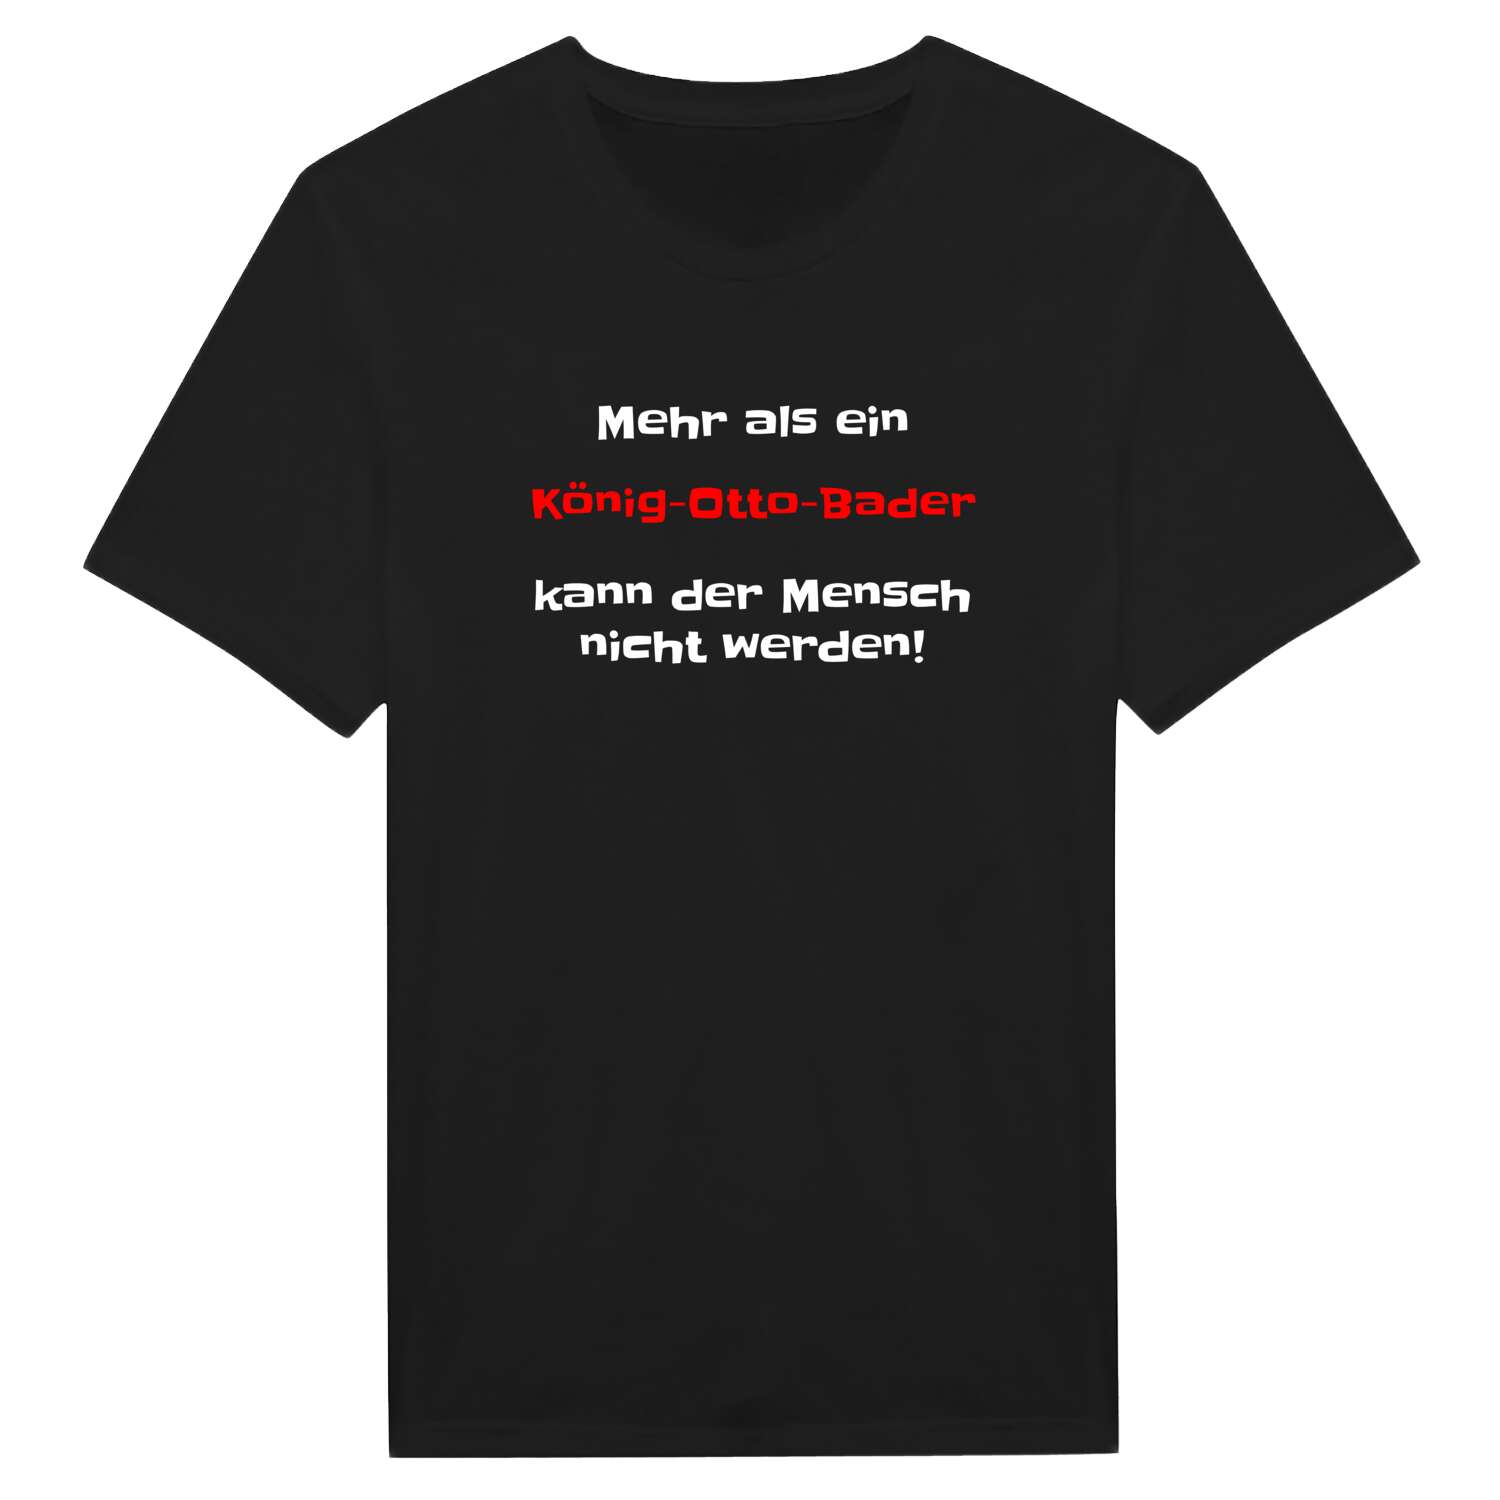 König-Otto-Bad T-Shirt »Mehr als ein«